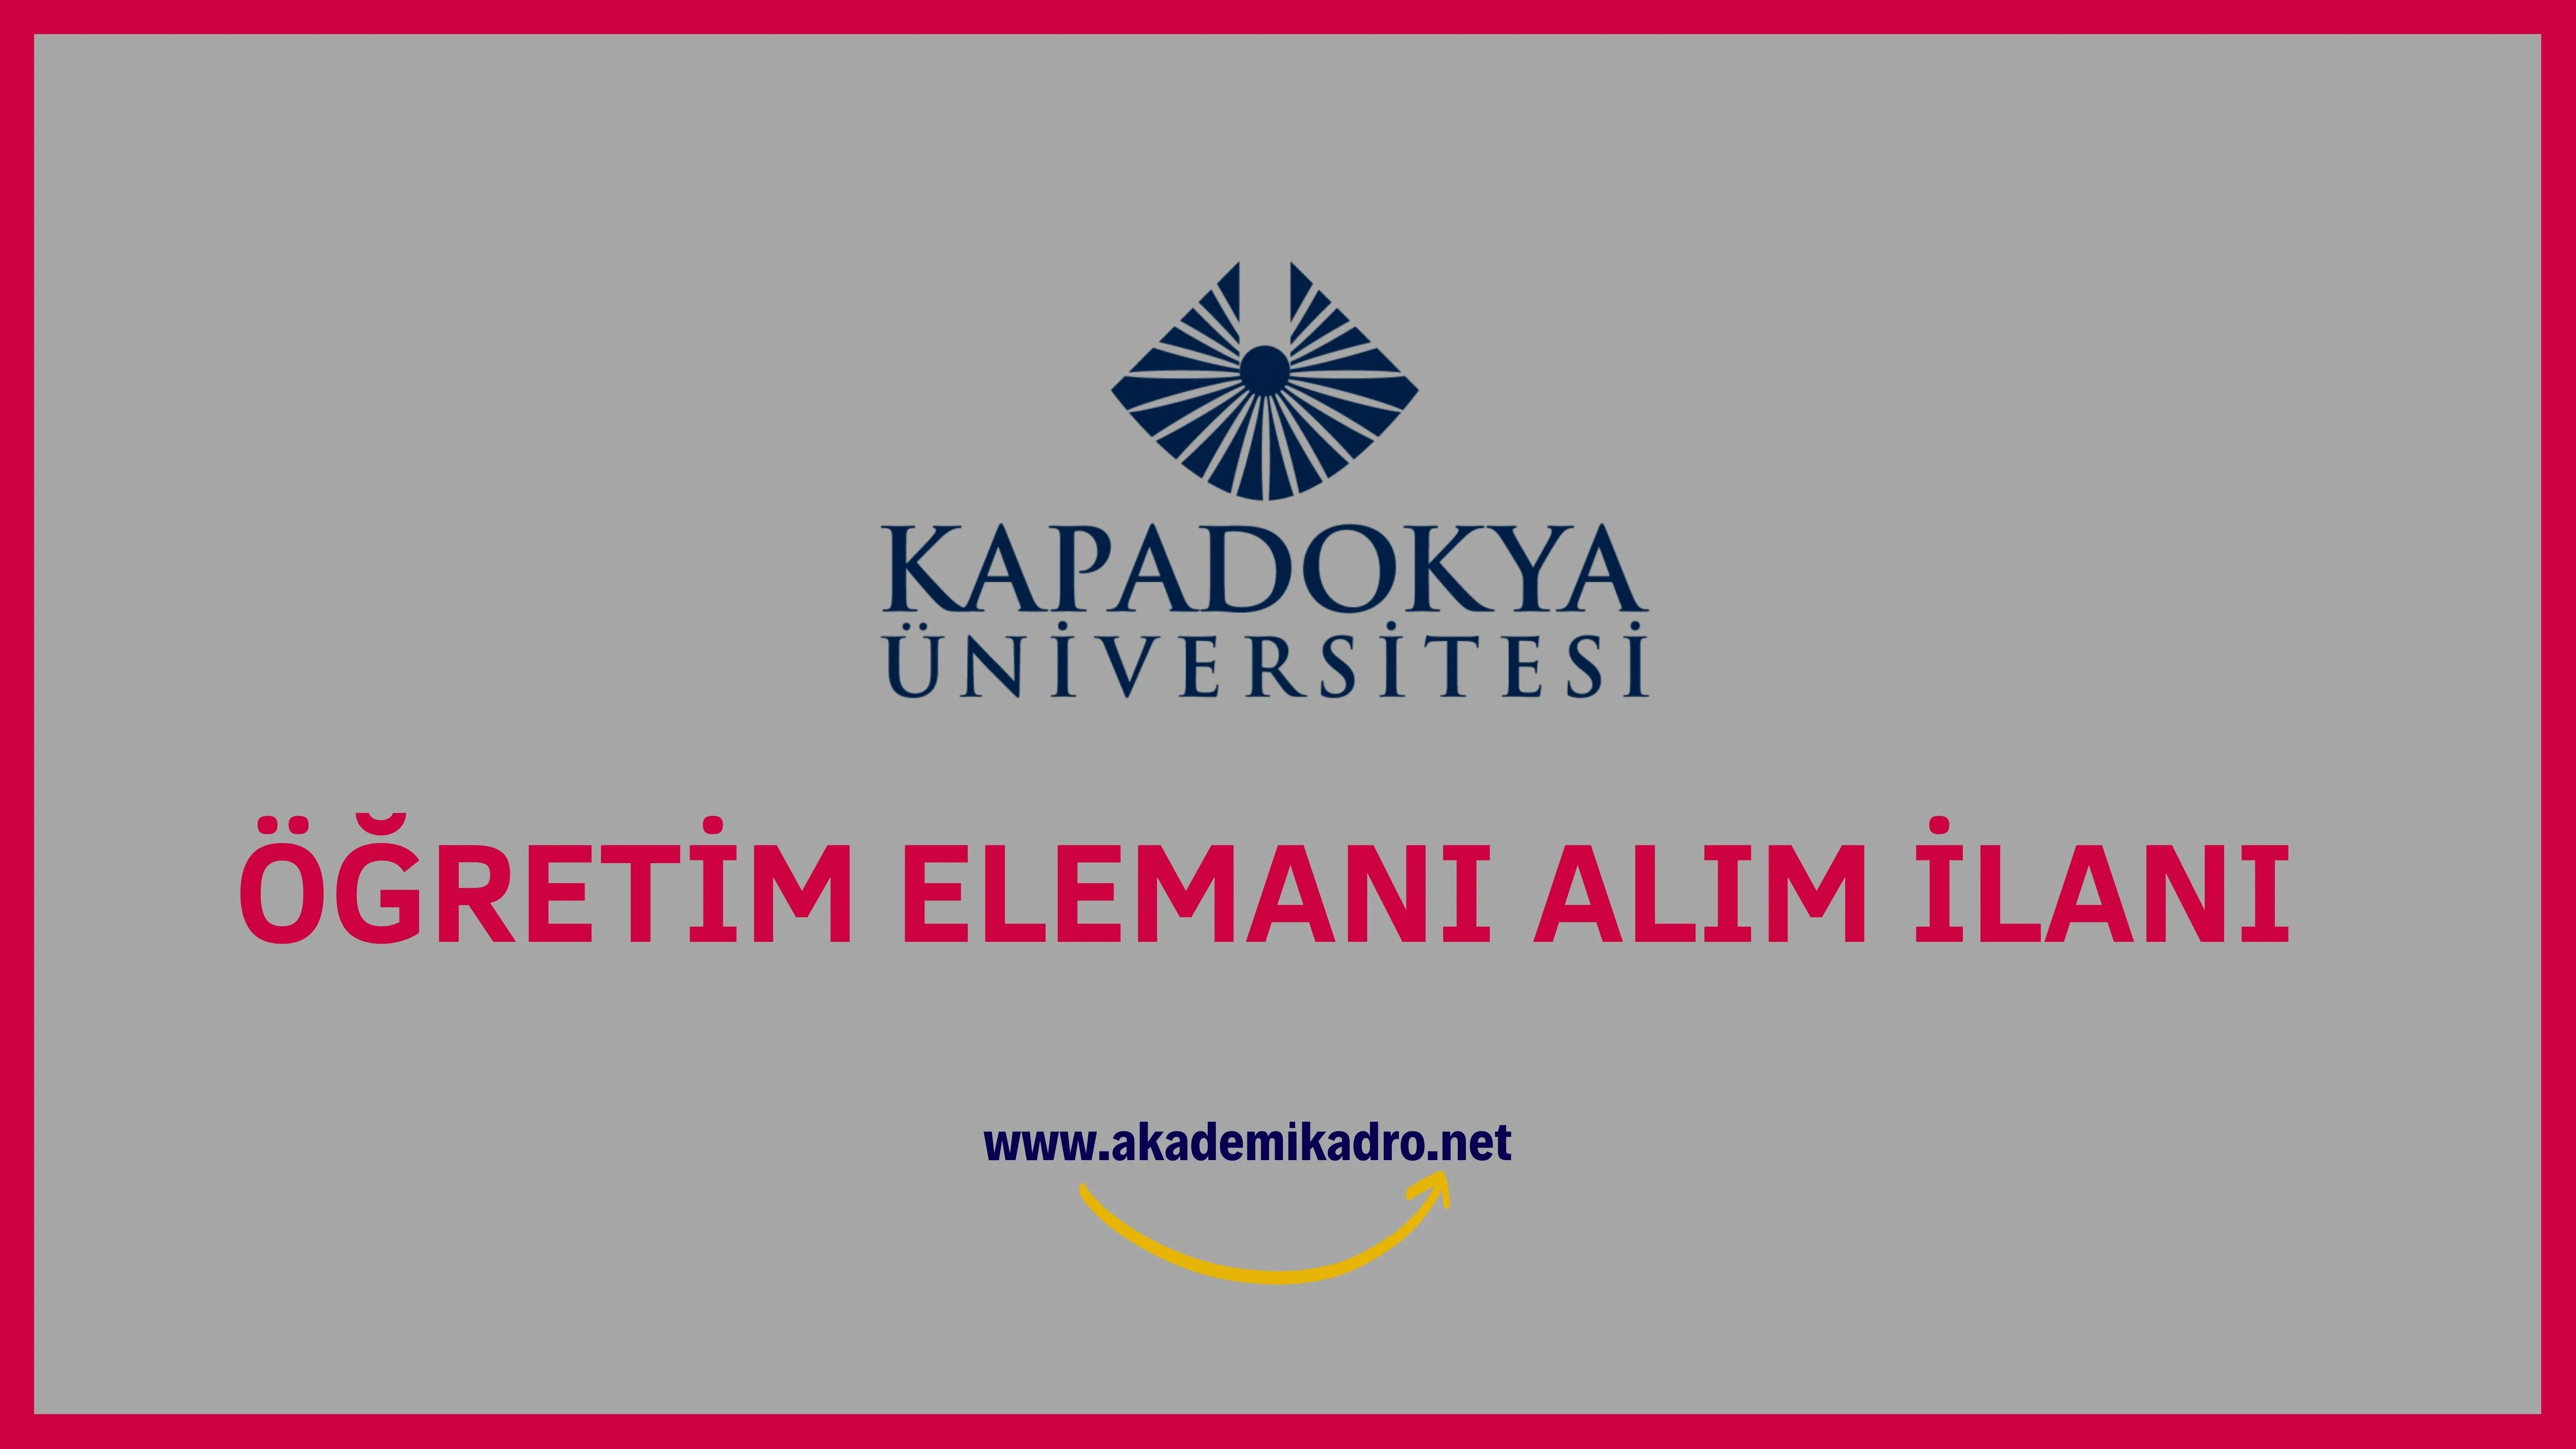 Kapadokya Üniversitesi 8 Öğretim Görevlisi, 4 Araştırma Görevlisi ve 2 Öğretim üyesi alacaktır.